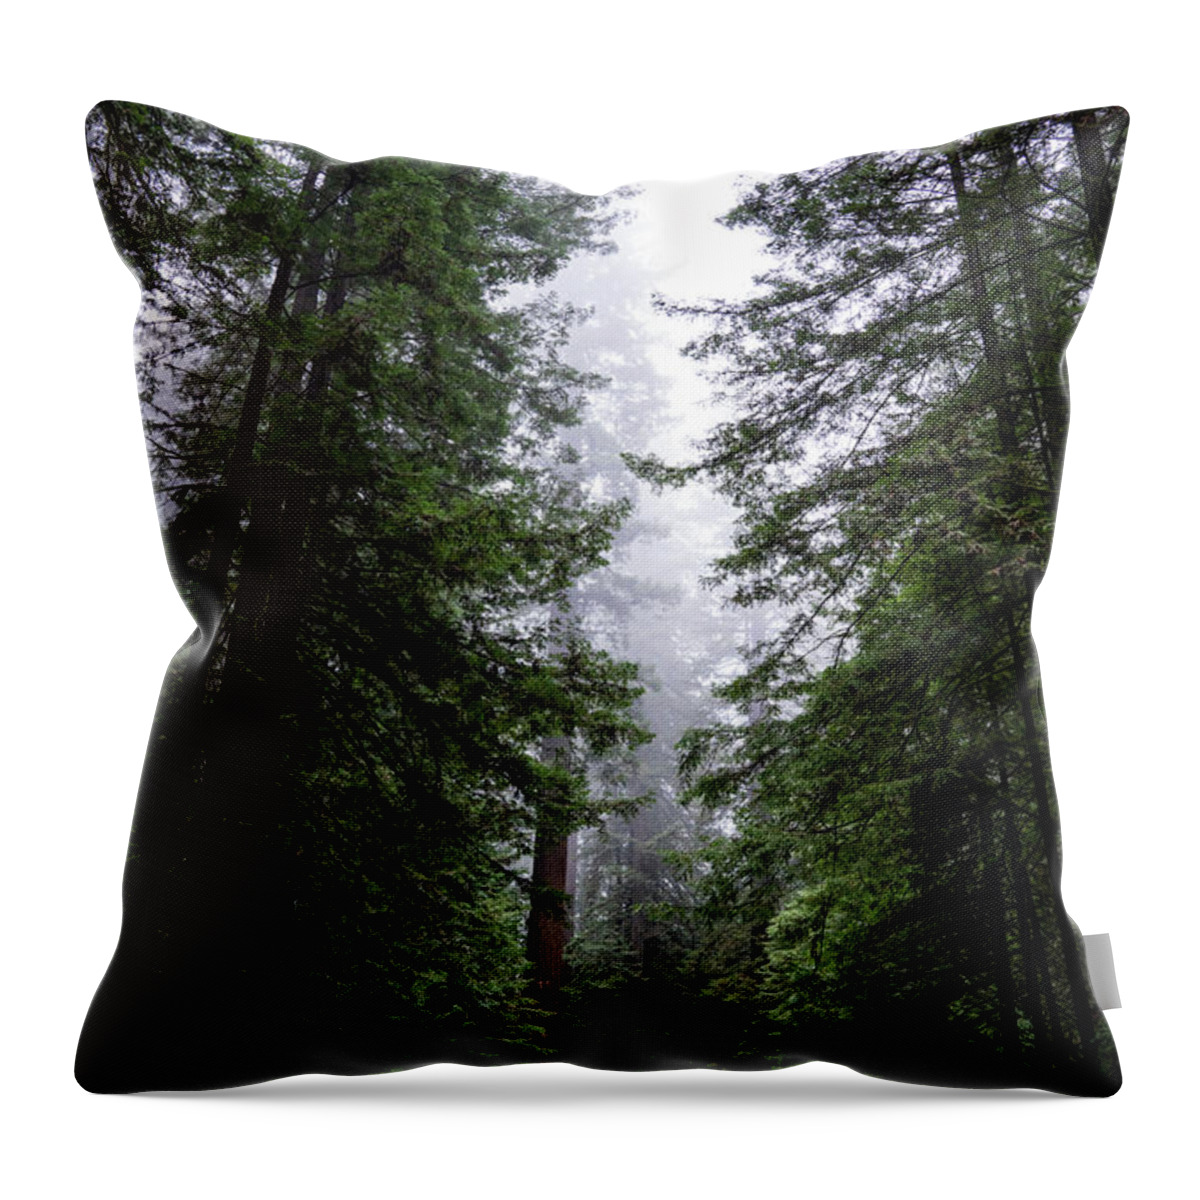 Sebastian Kennerknecht Throw Pillow featuring the photograph Redwoods Along Avenue Of The Giants by Sebastian Kennerknecht